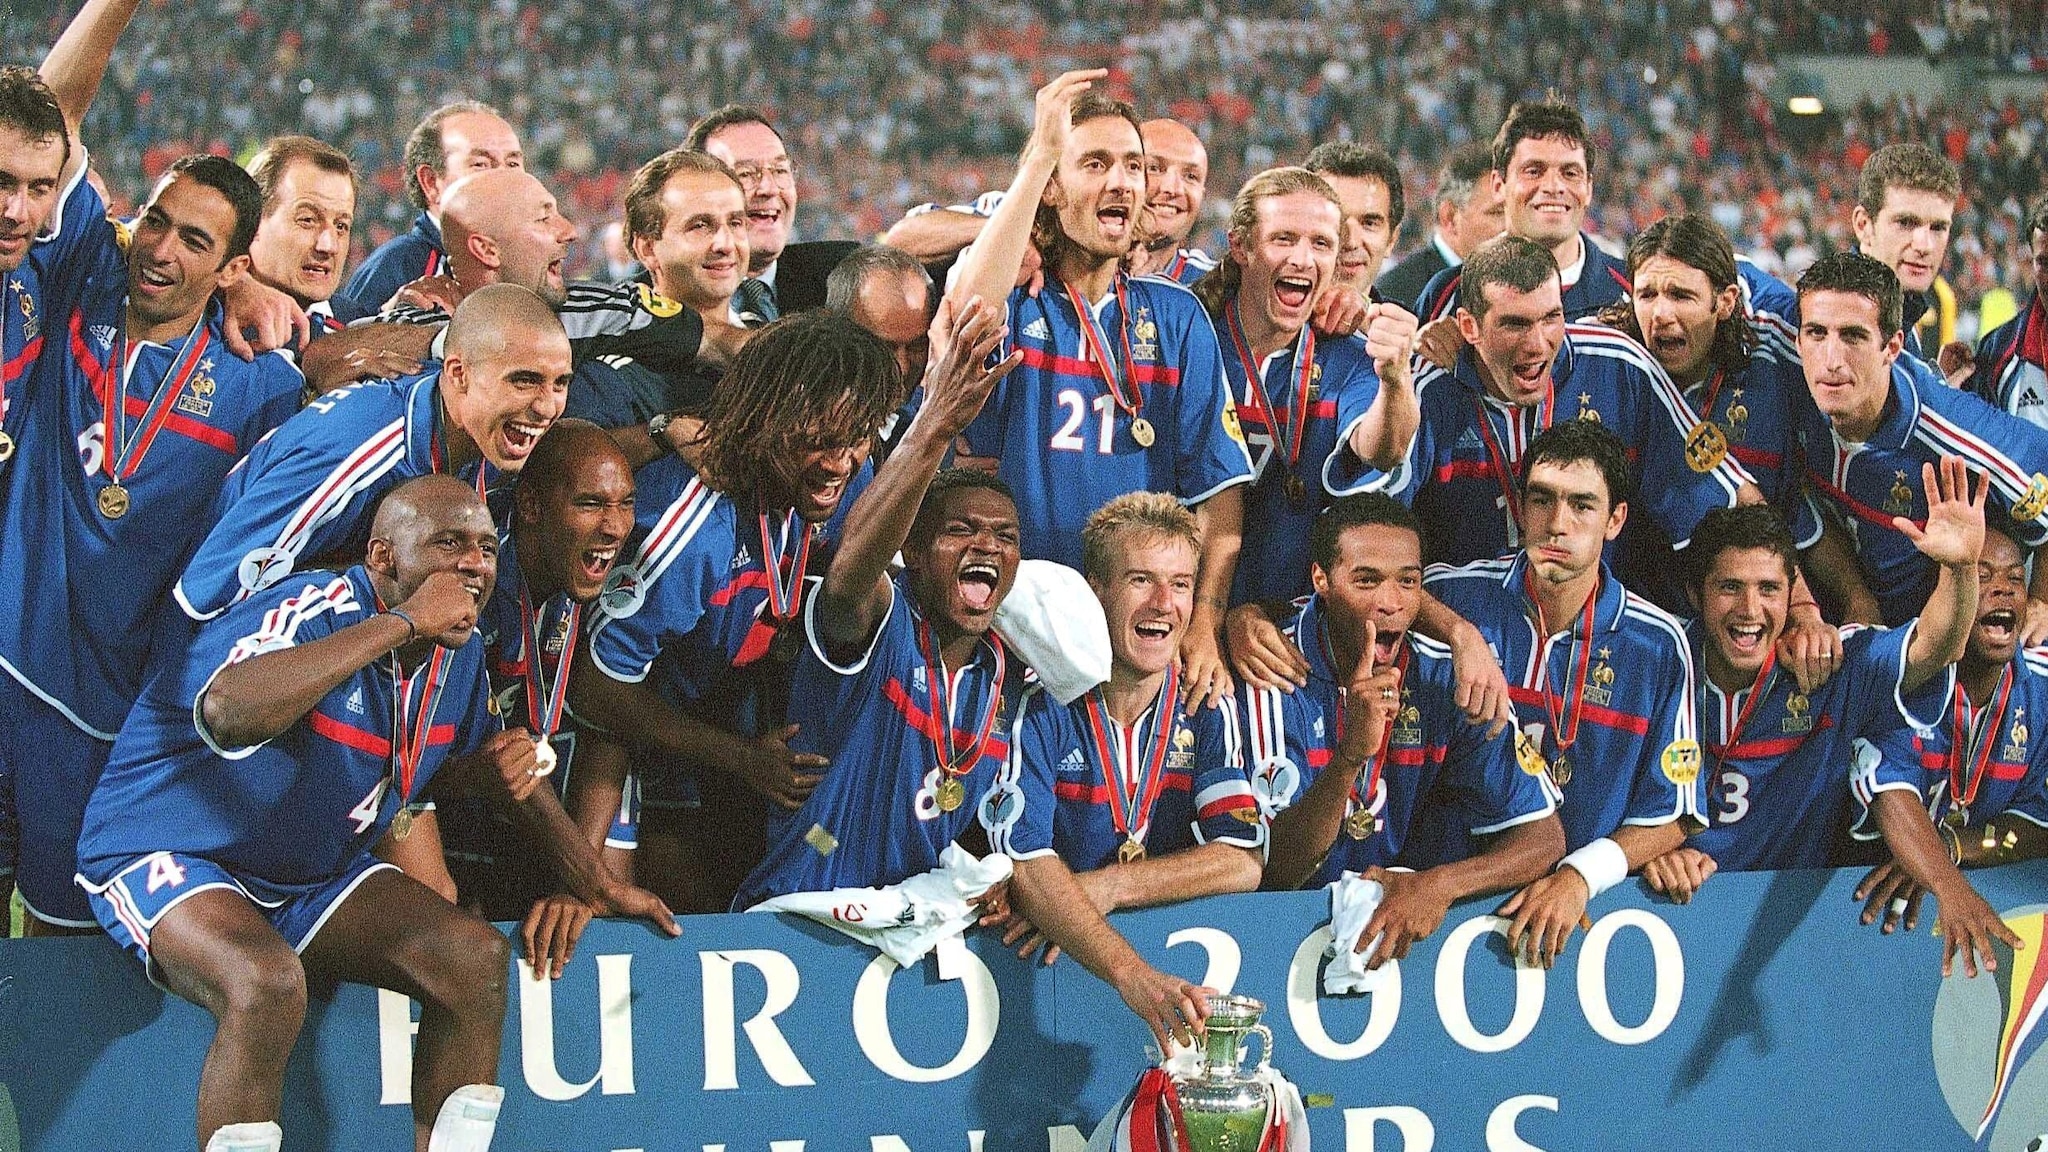 EURO 2000 : Trézéguet offre un moment en or aux Bleus | UEFA EURO | UEFA.com